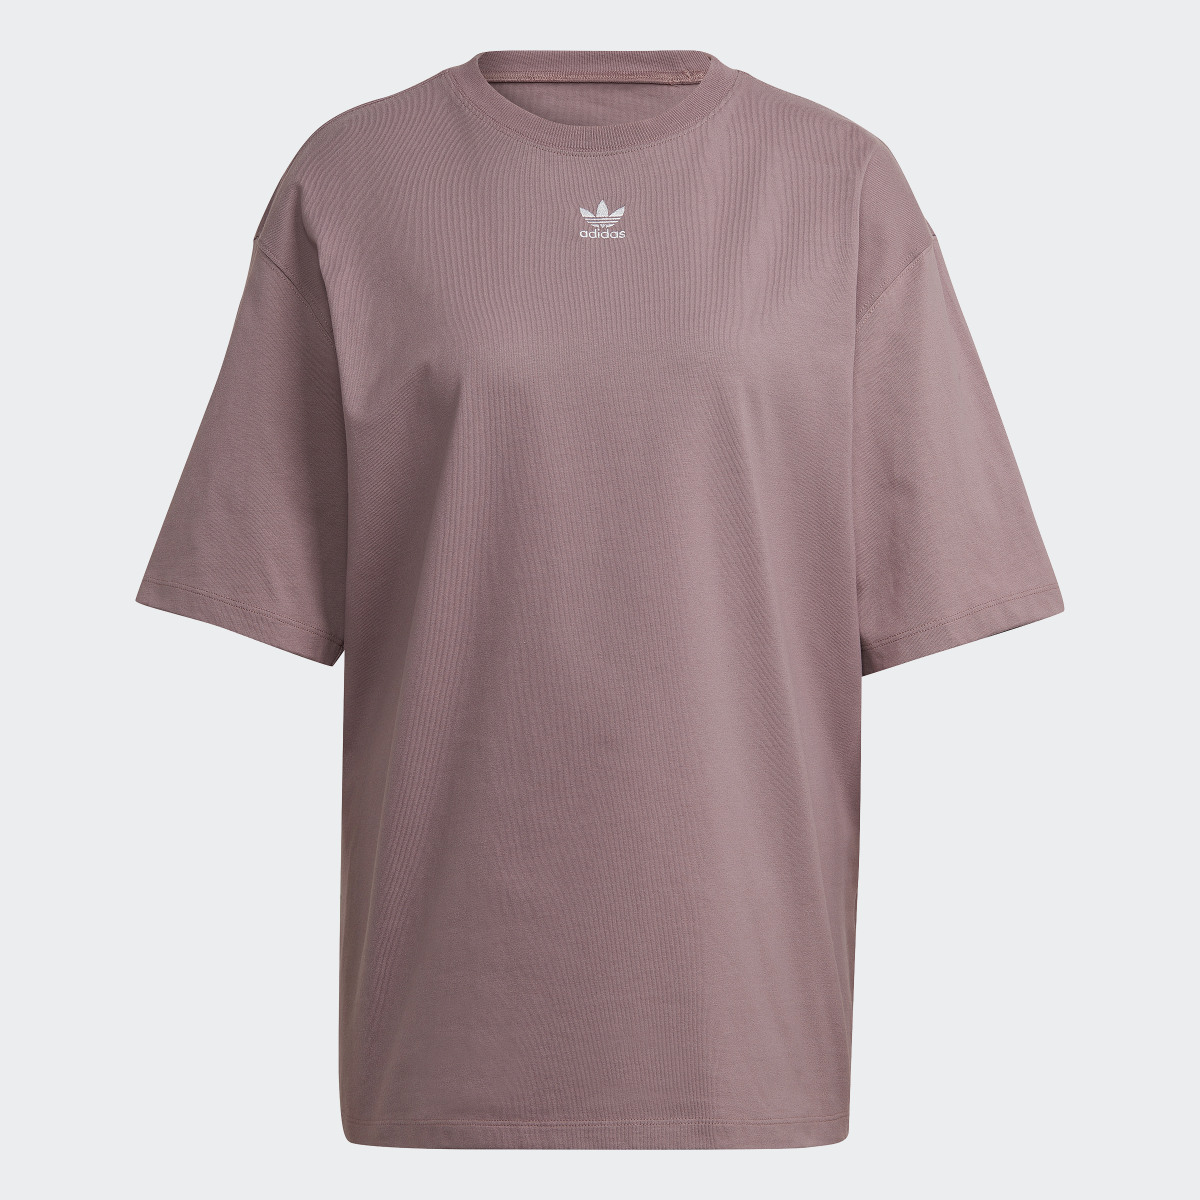 Adidas Adicolor Essentials T-Shirt. 5